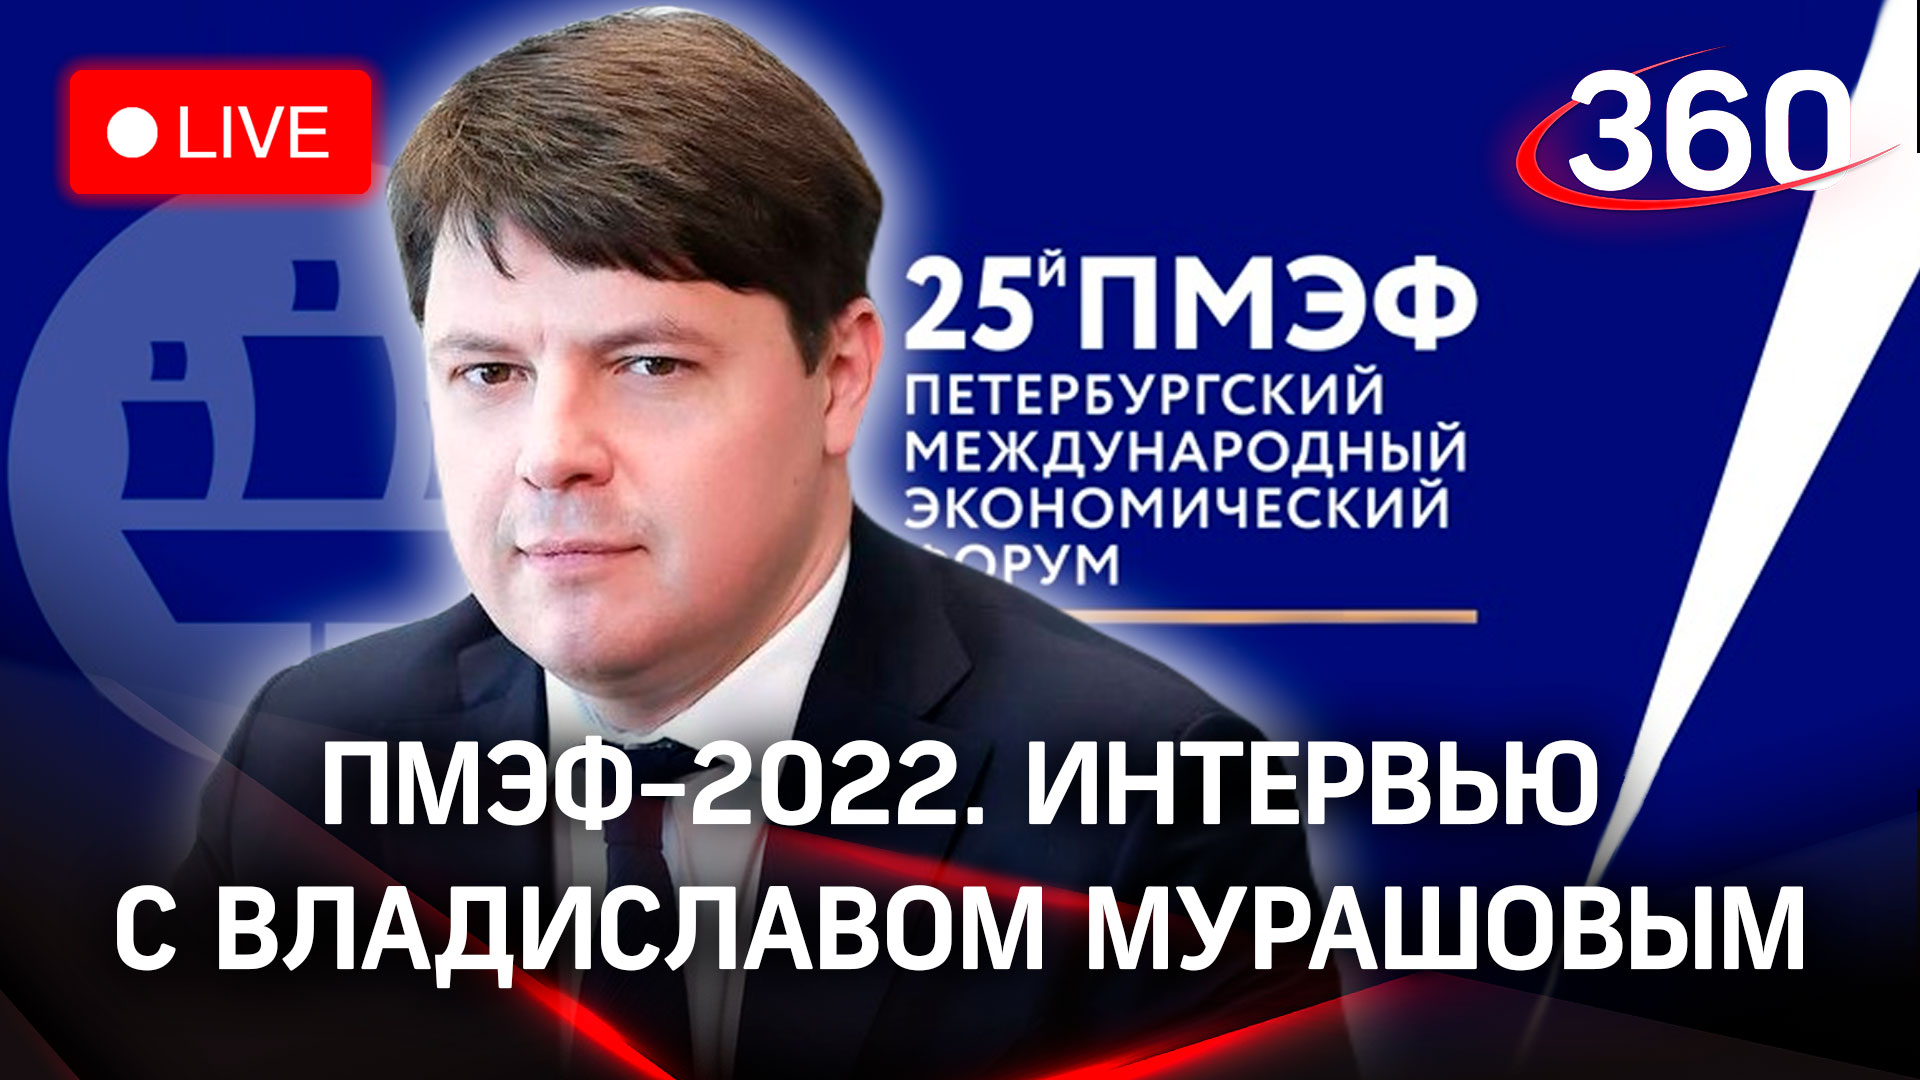 ПМЭФ-2022: интервью с Владиславом Мурашовым, министром сельского хозяйства